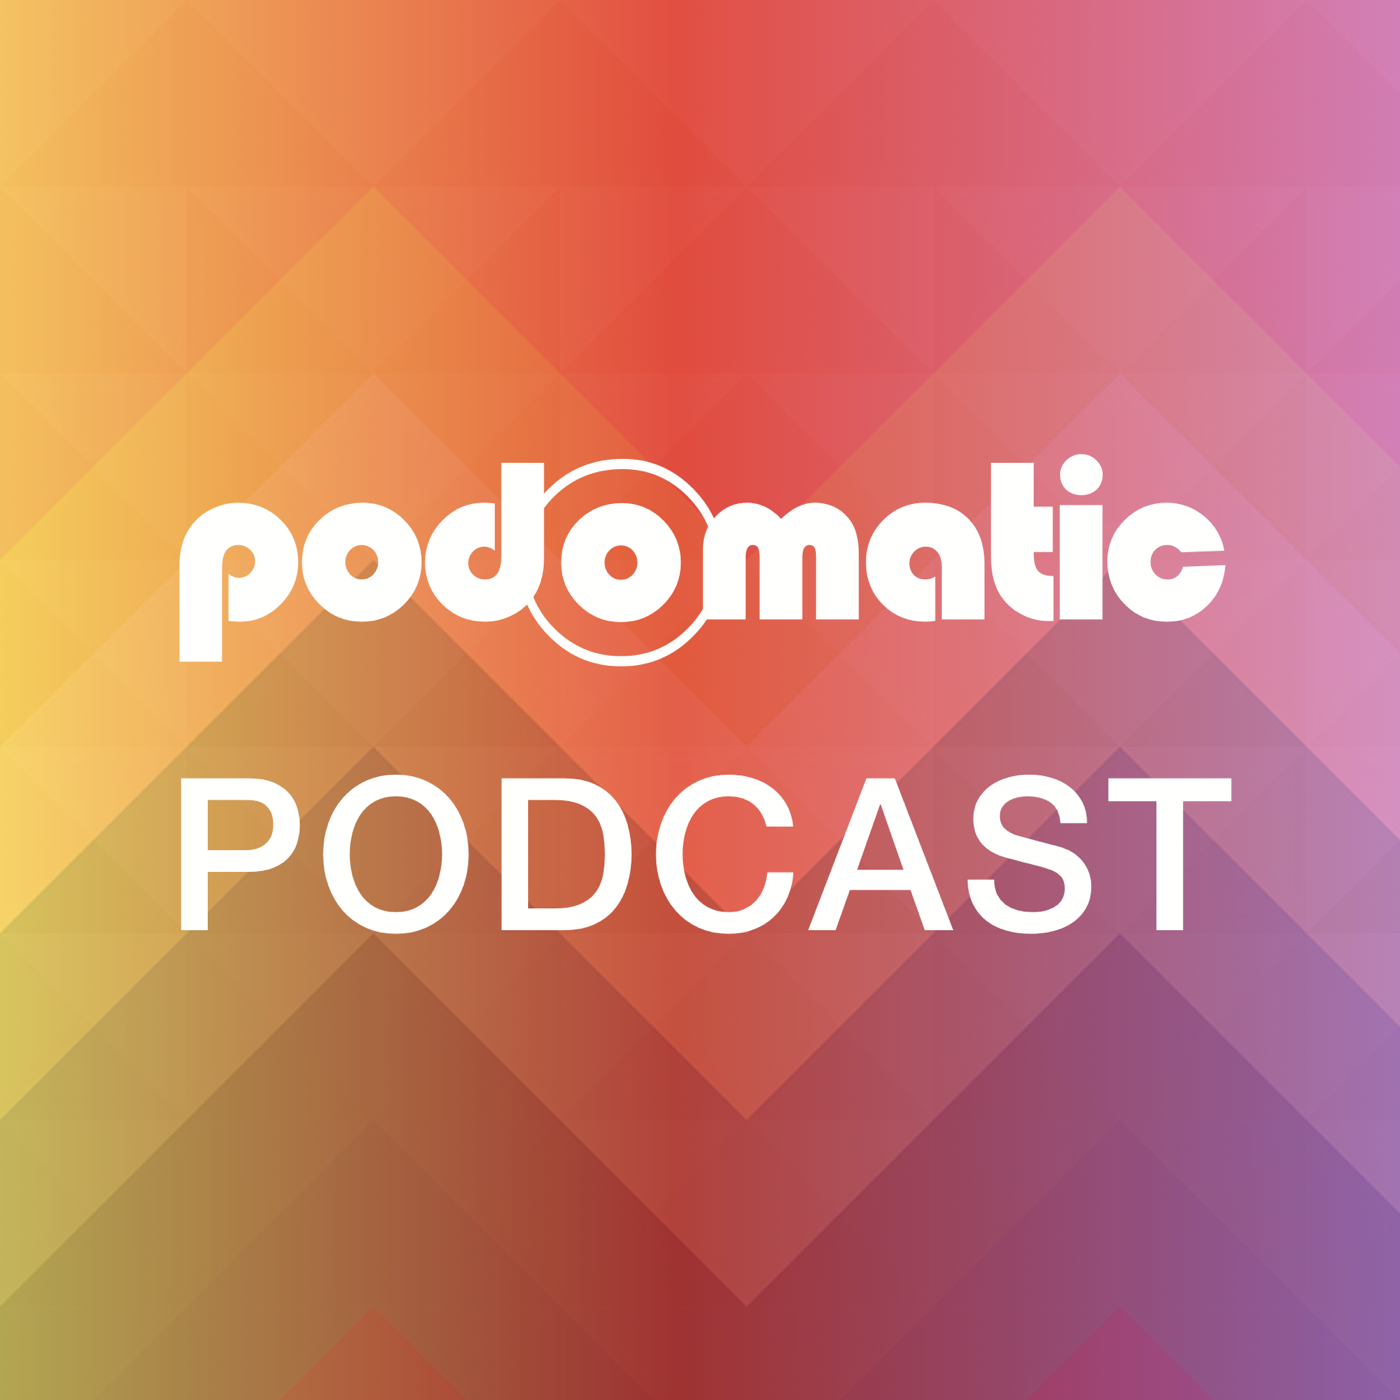 skgiftedmath's Podcast